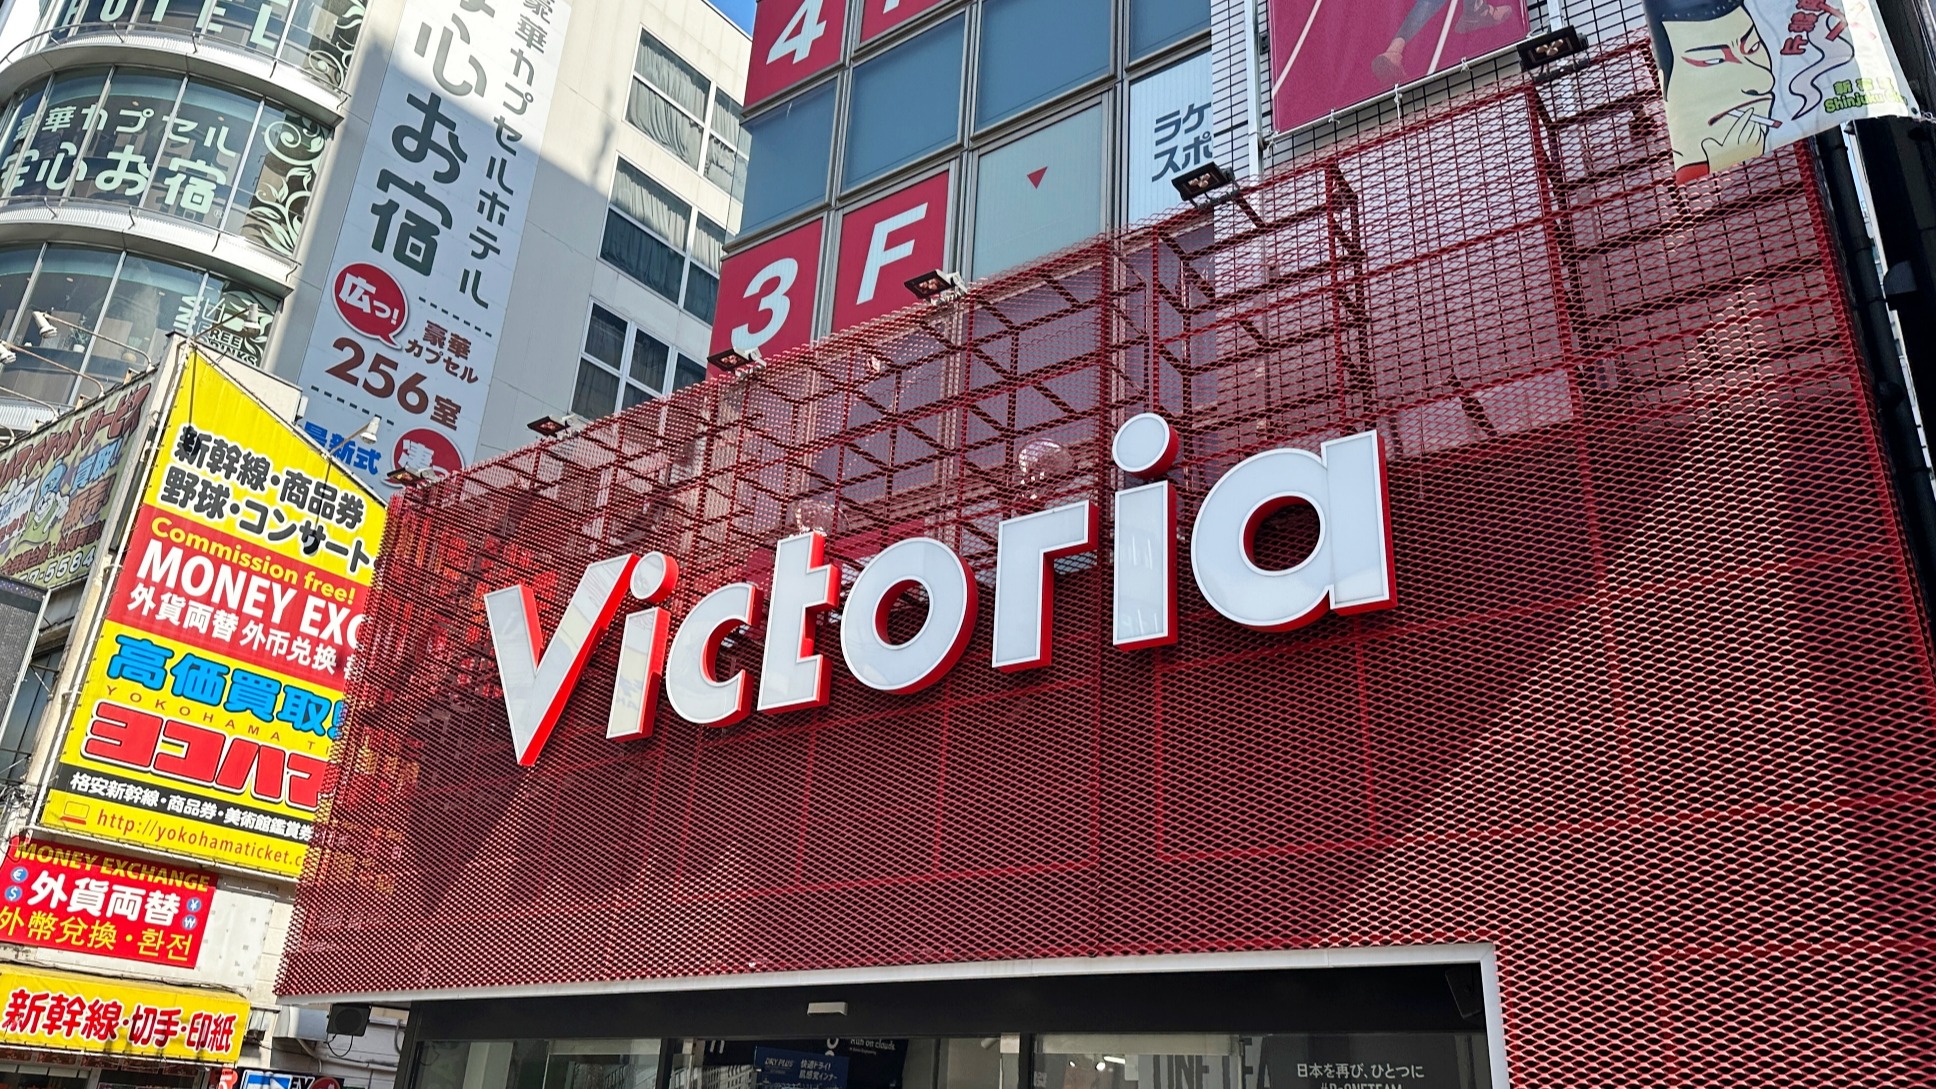 日本大型體育用品店「Victoria新宿店」，種類豐富齊全，籃球、足球、羽球等各類運動用品這裡通通都有